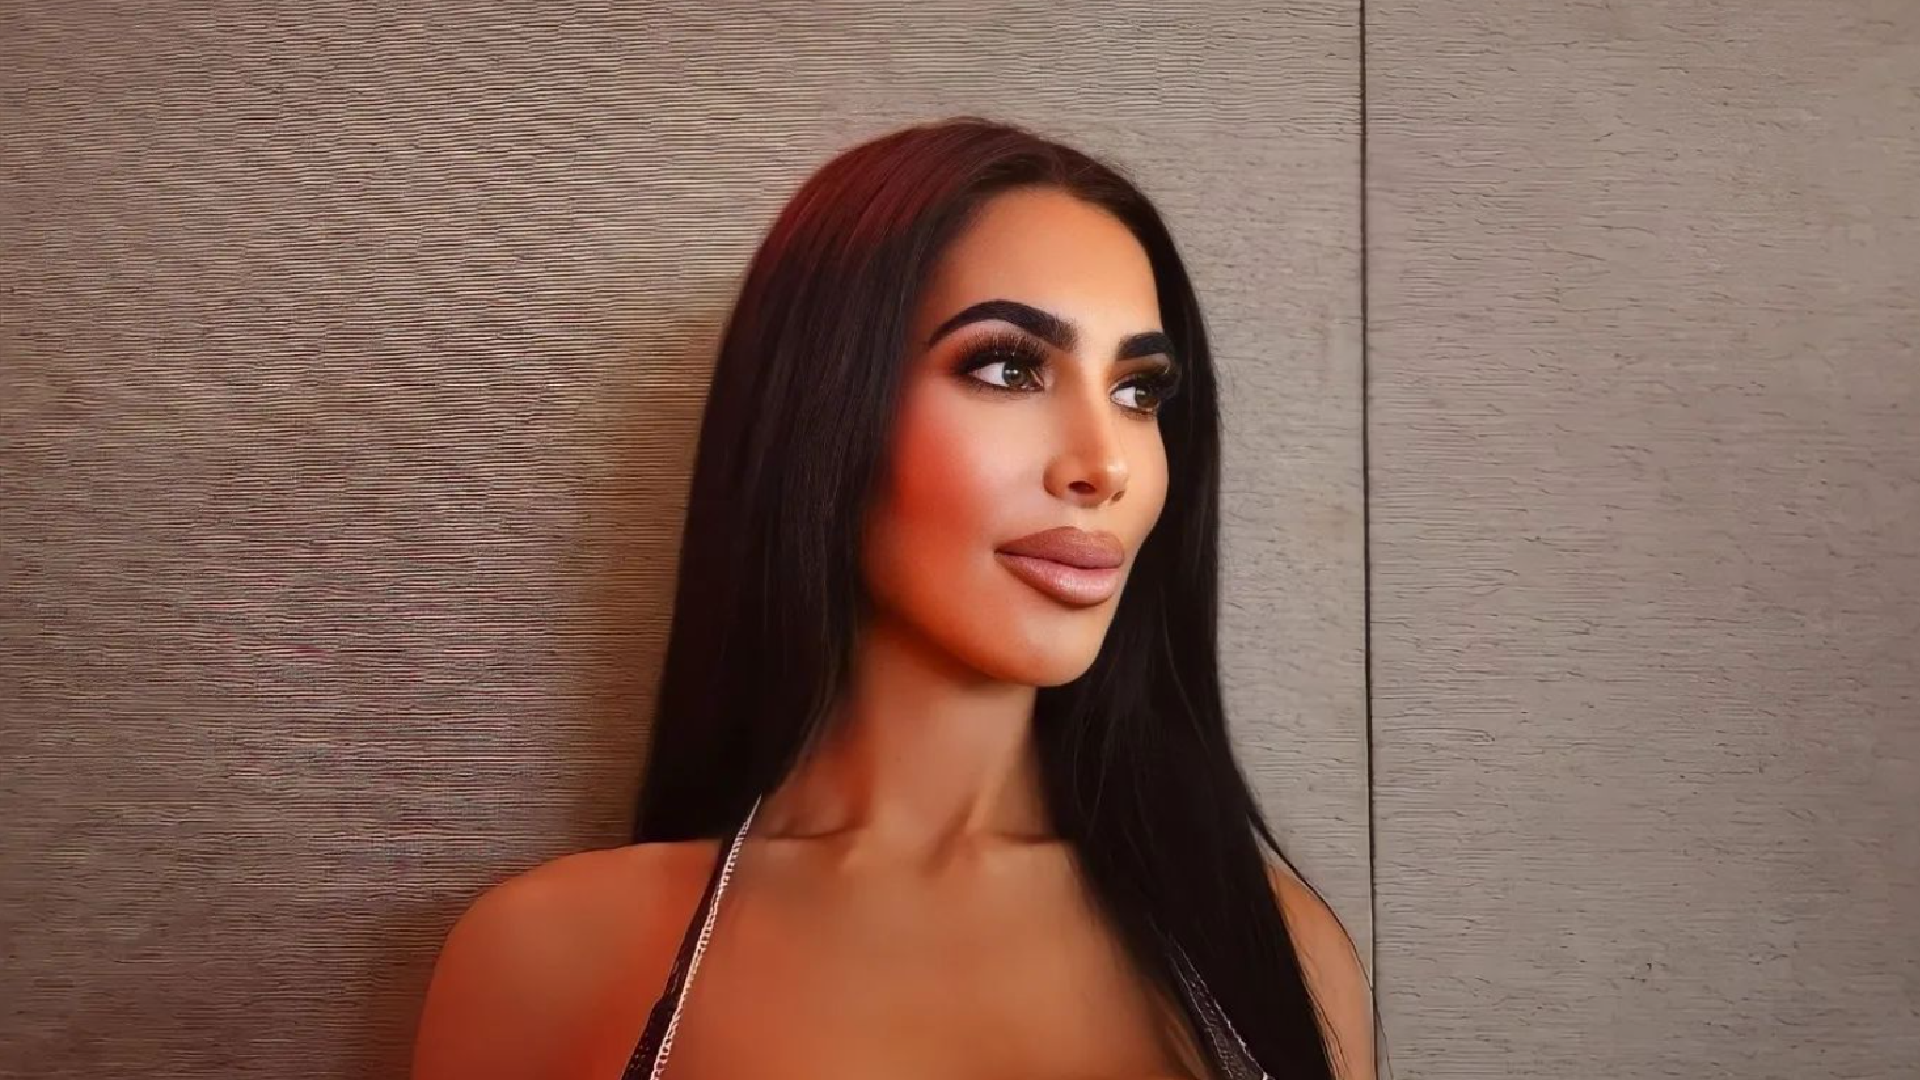 Doppelgängerin Von Kim Kardashian An Heimlichen ästhetischen Eingriff Gestorben 4991